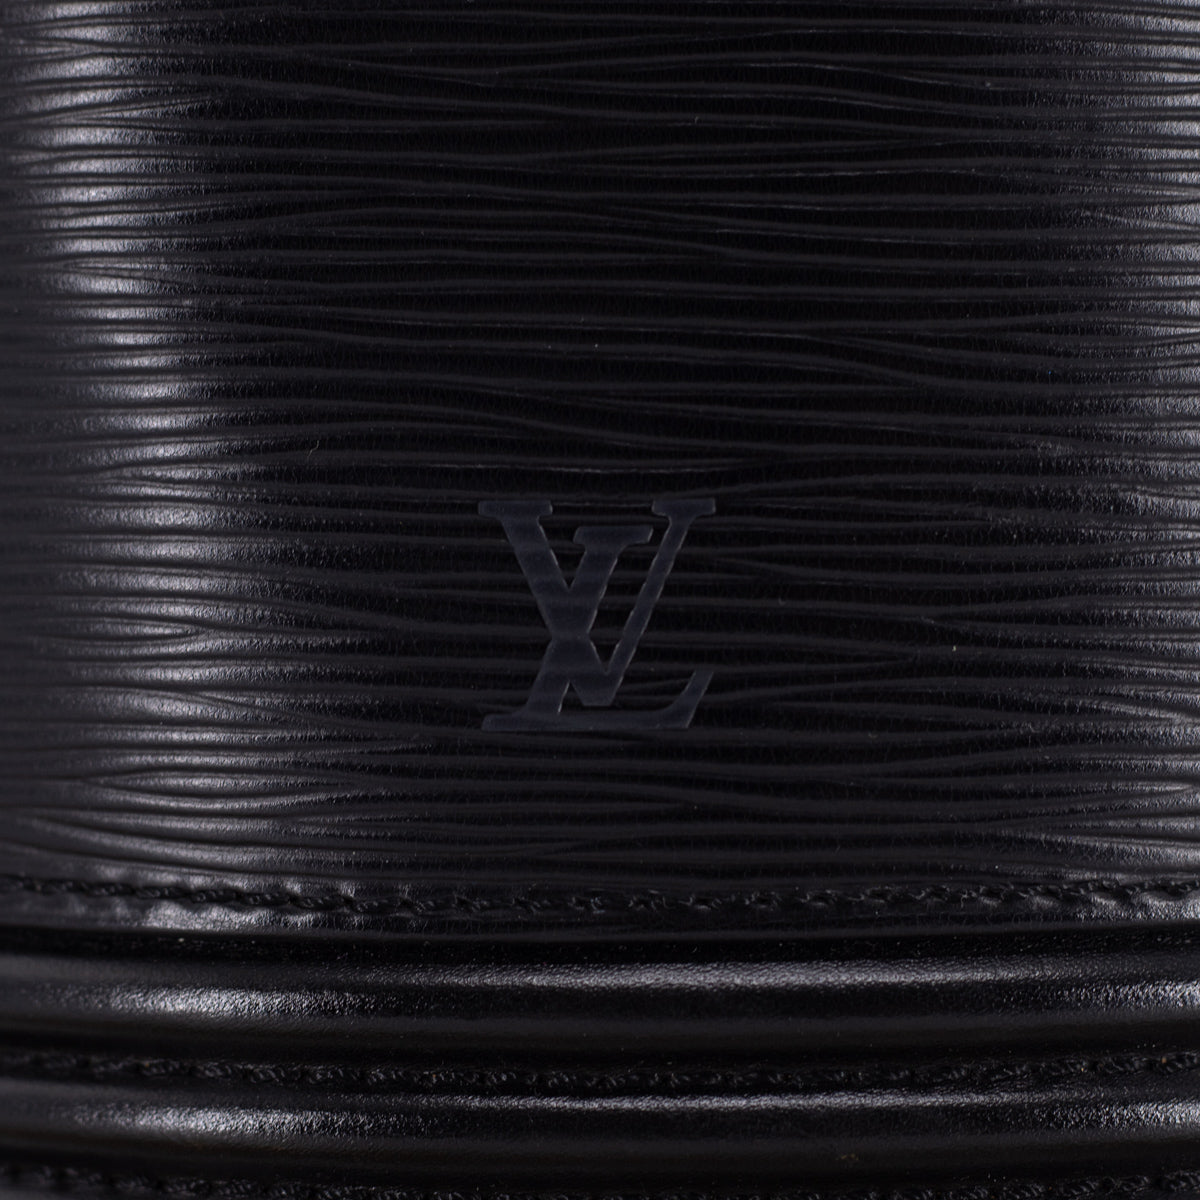 Bucket cloth handbag Louis Vuitton Black in Fabric - 17219505